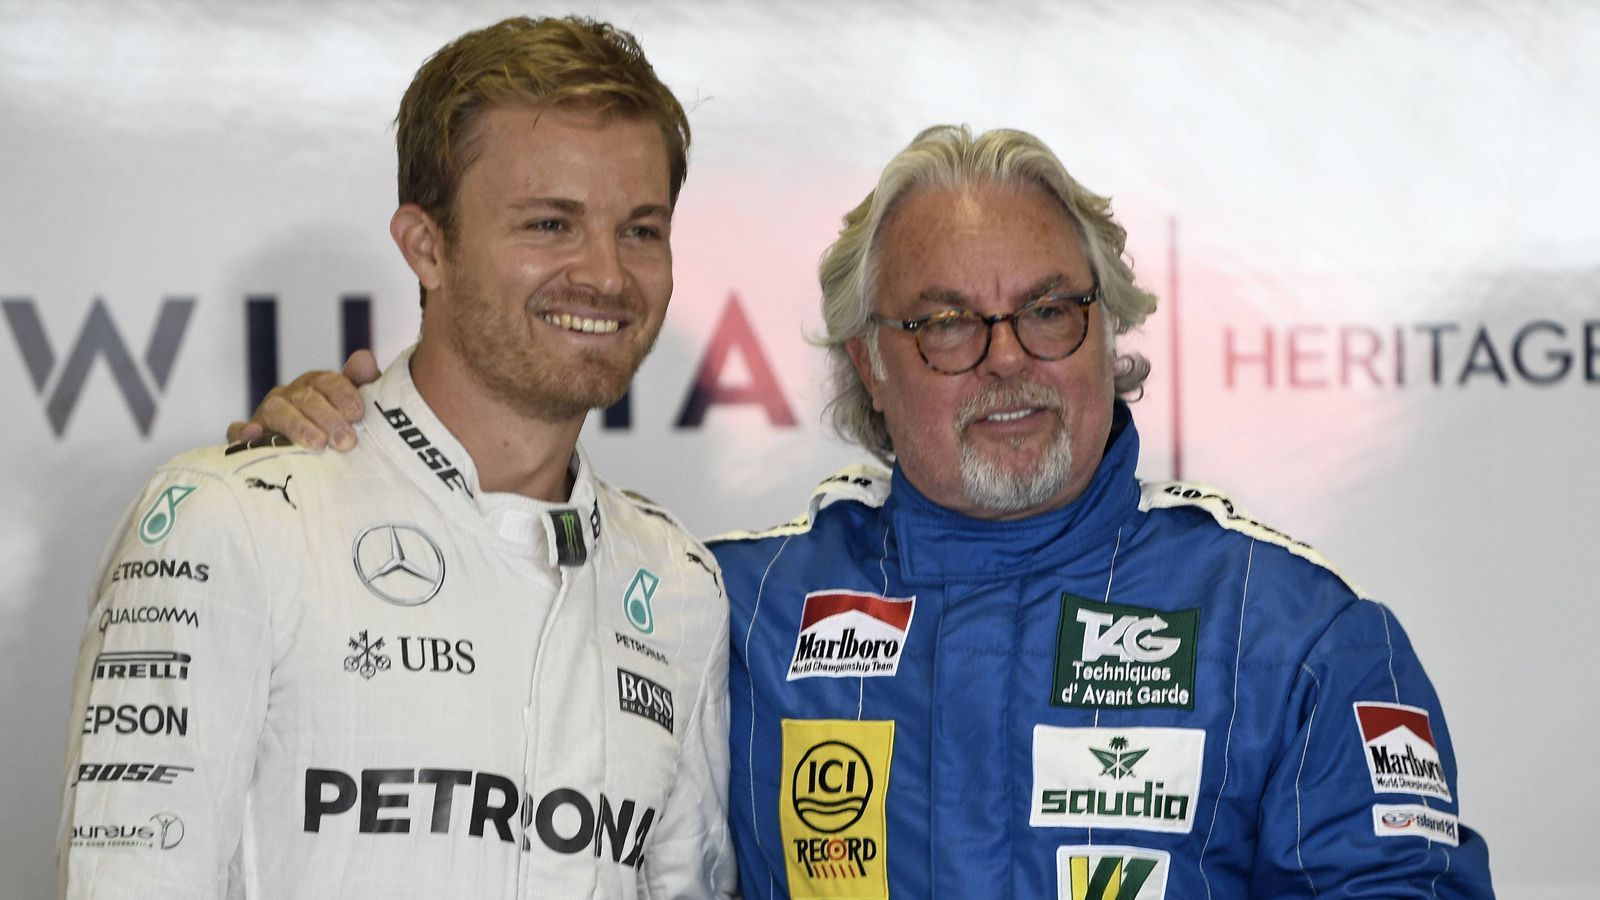 
                <strong>Nico Rosberg</strong><br>
                Bei Nico Rosberg liegt die Rennsport-Leidenschaft in den Genen: Sein Vater, der Finne Keke Rosberg, startete zwischen 1978 und 1986 in der Formel 1, gewann die WM 1982. Nico, der in Deutschland geboren und aufgewachsen ist und die deutsche sowie die finnische Staatsbürgerschaft besitzt, begann seine Rennsportkarriere 1996 als 11-Jähriger im Kart. Bereits vier Jahre später wurde er Vize-Europameister in der Formel A des Kart-Sports - hinter Lewis Hamilton. Über die Formel 3 und die GP2-Serie gelangte Rosberg 2006 schließlich in die Formel 1, wo er es 2016 seinem Vater gleichtat und den WM-Titel holte.
              